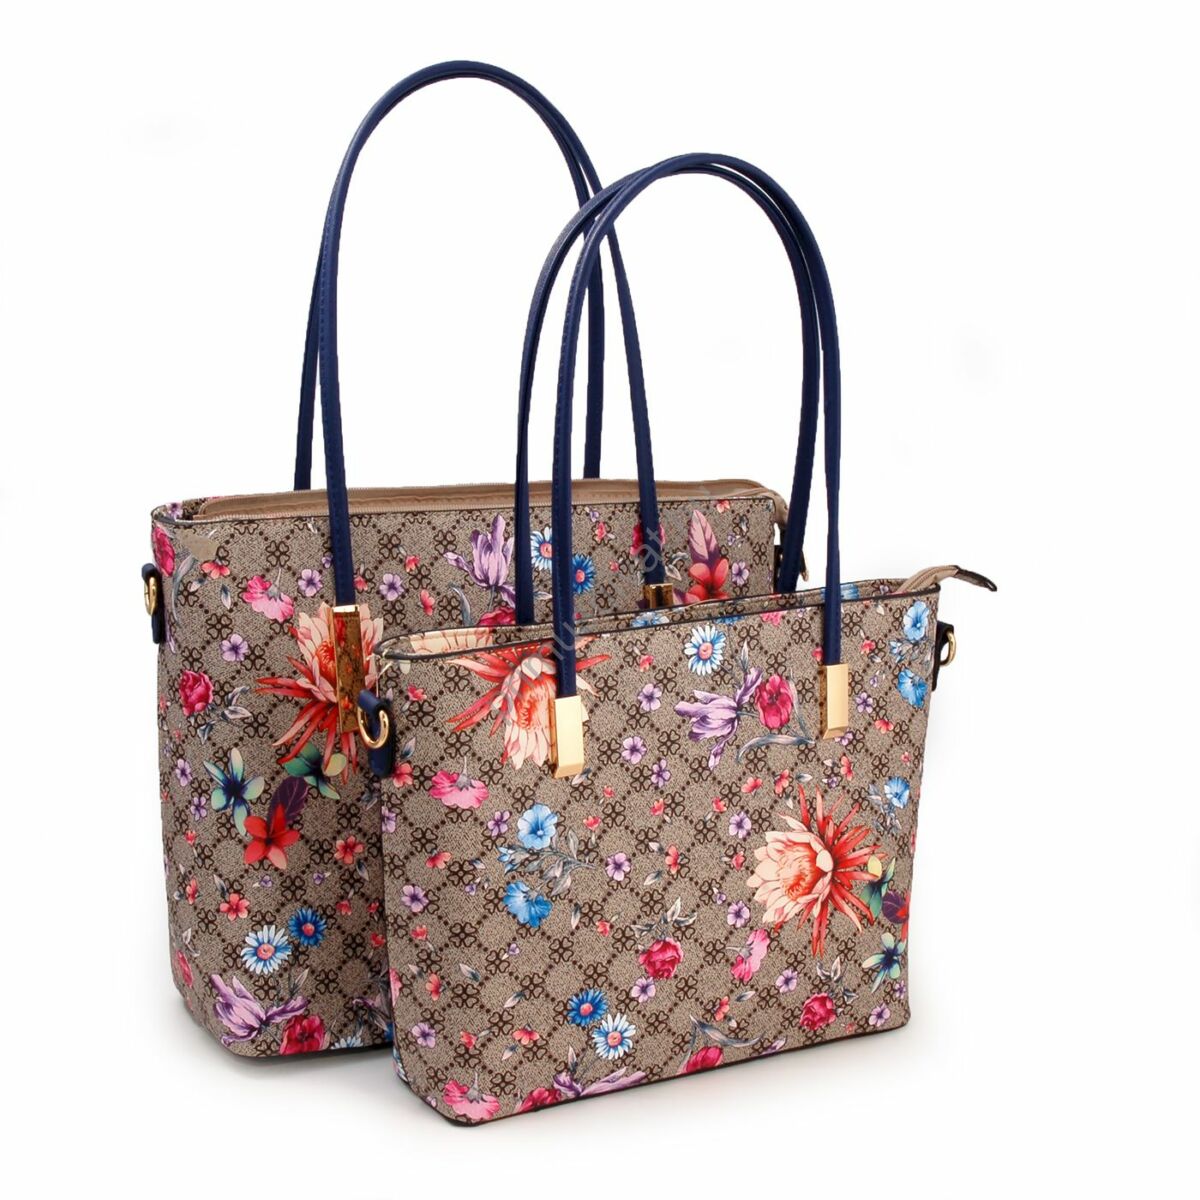 Virágmintás műbőr női táska szett, 2 darab egyben és külön is hordható táskával